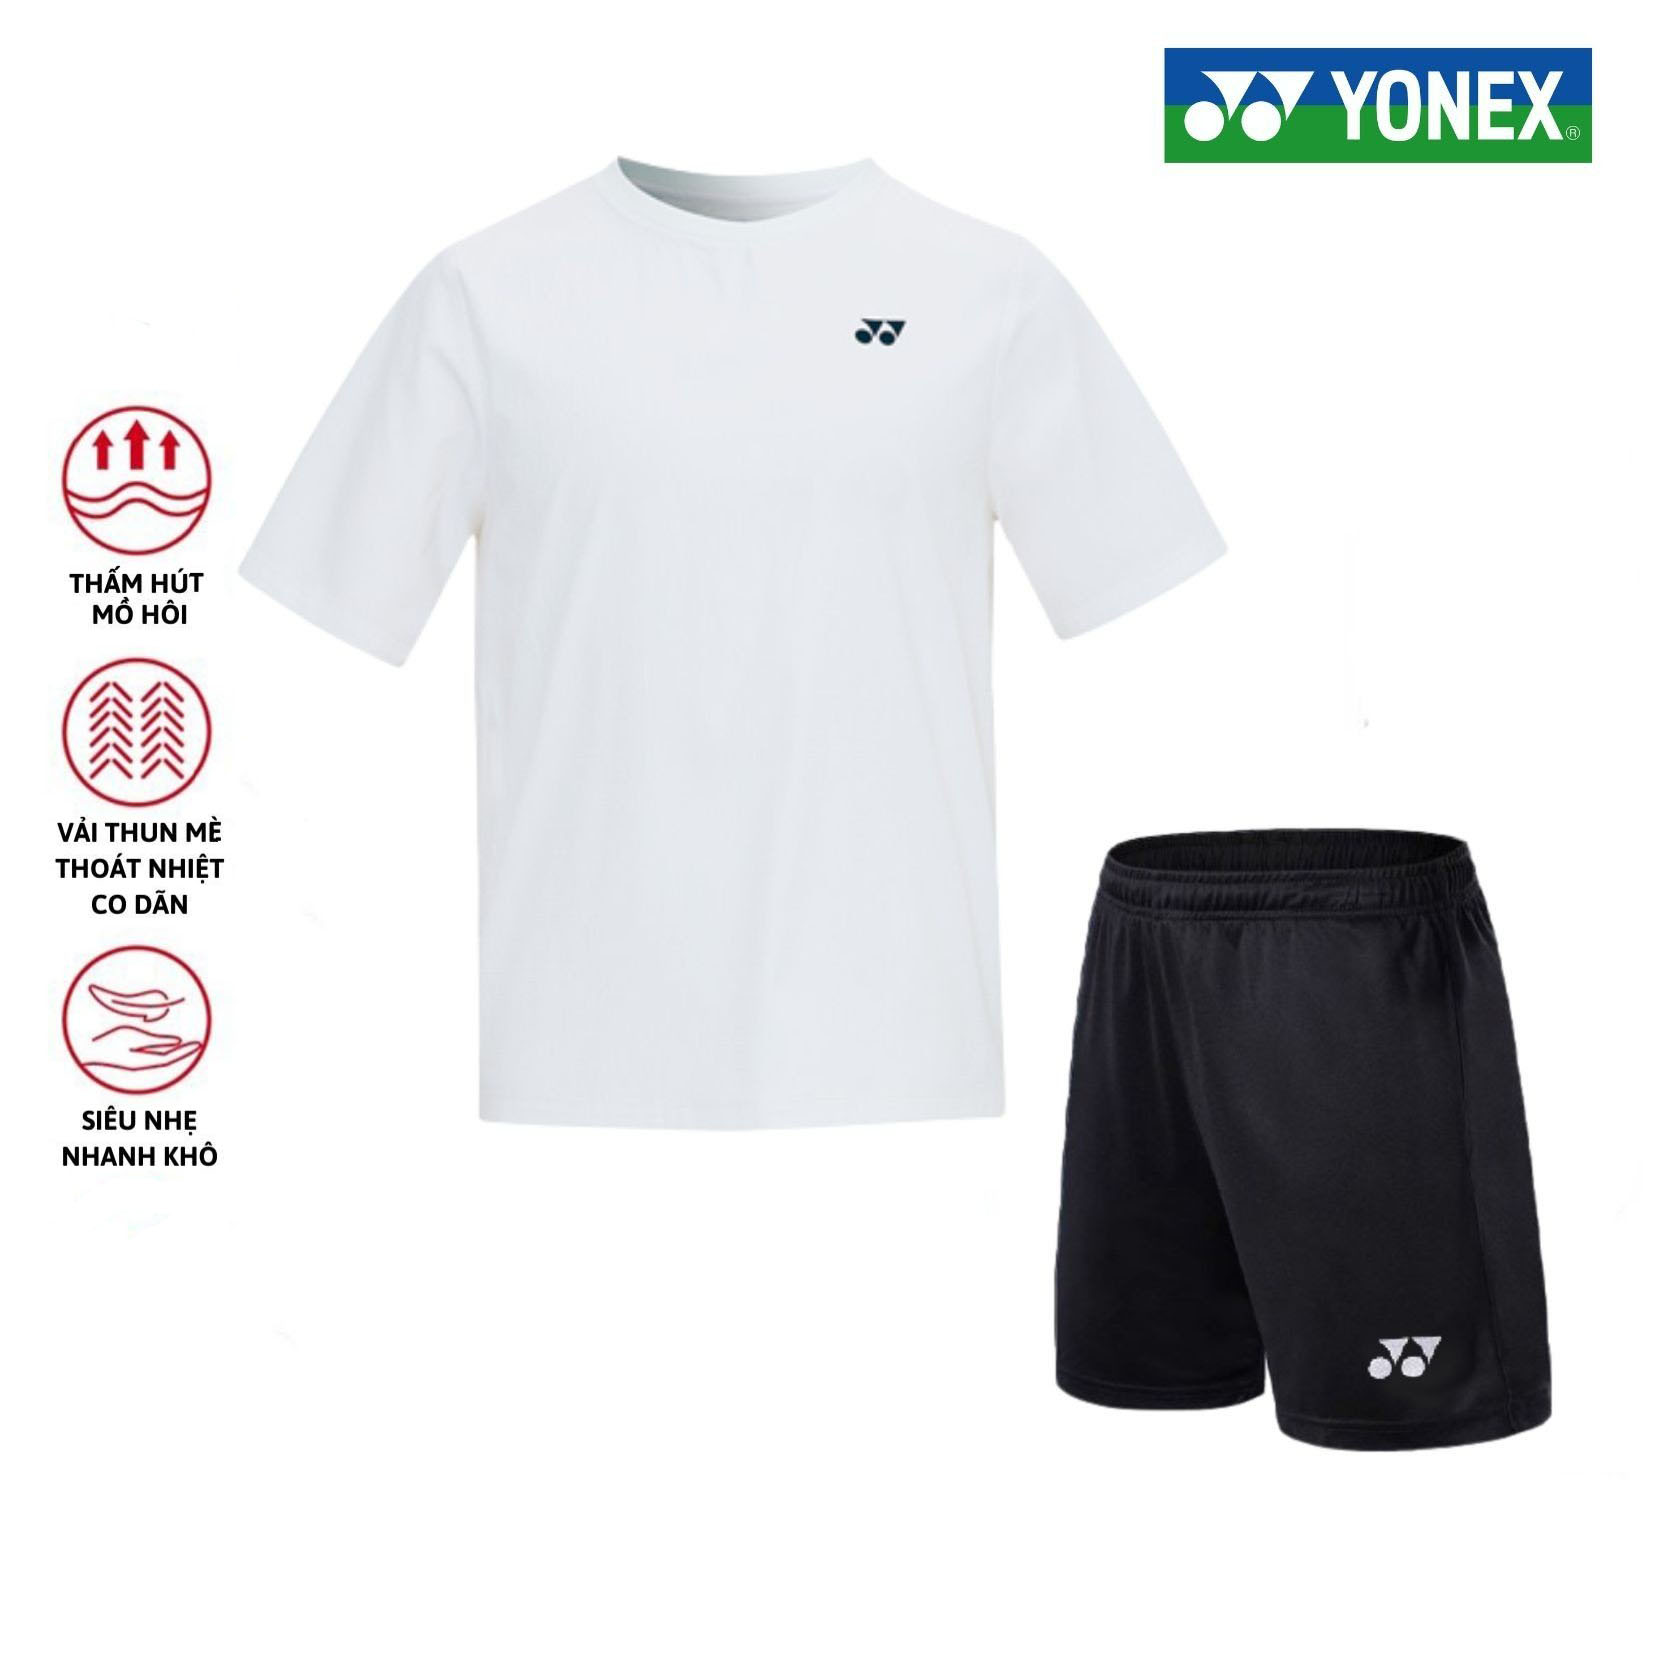 Áo cầu lông, quần cầu lông Yonex chuyên nghiệp mới nhất sử dụng tập luyện và thi đấu cầu lông T2